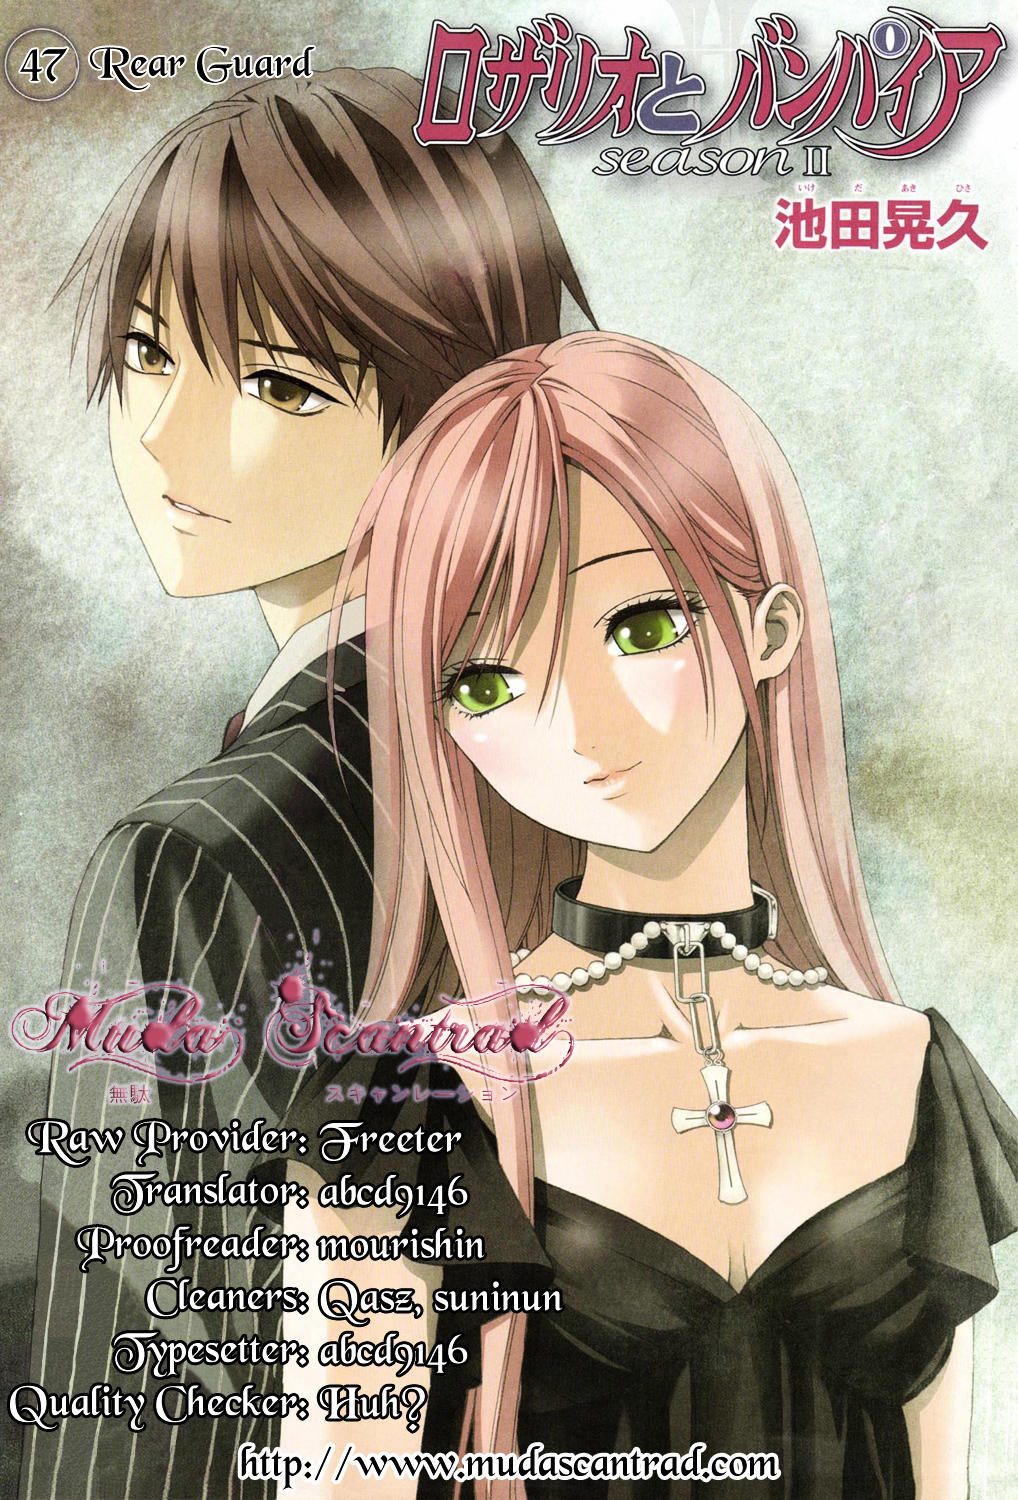 rosario vampire manga cover art